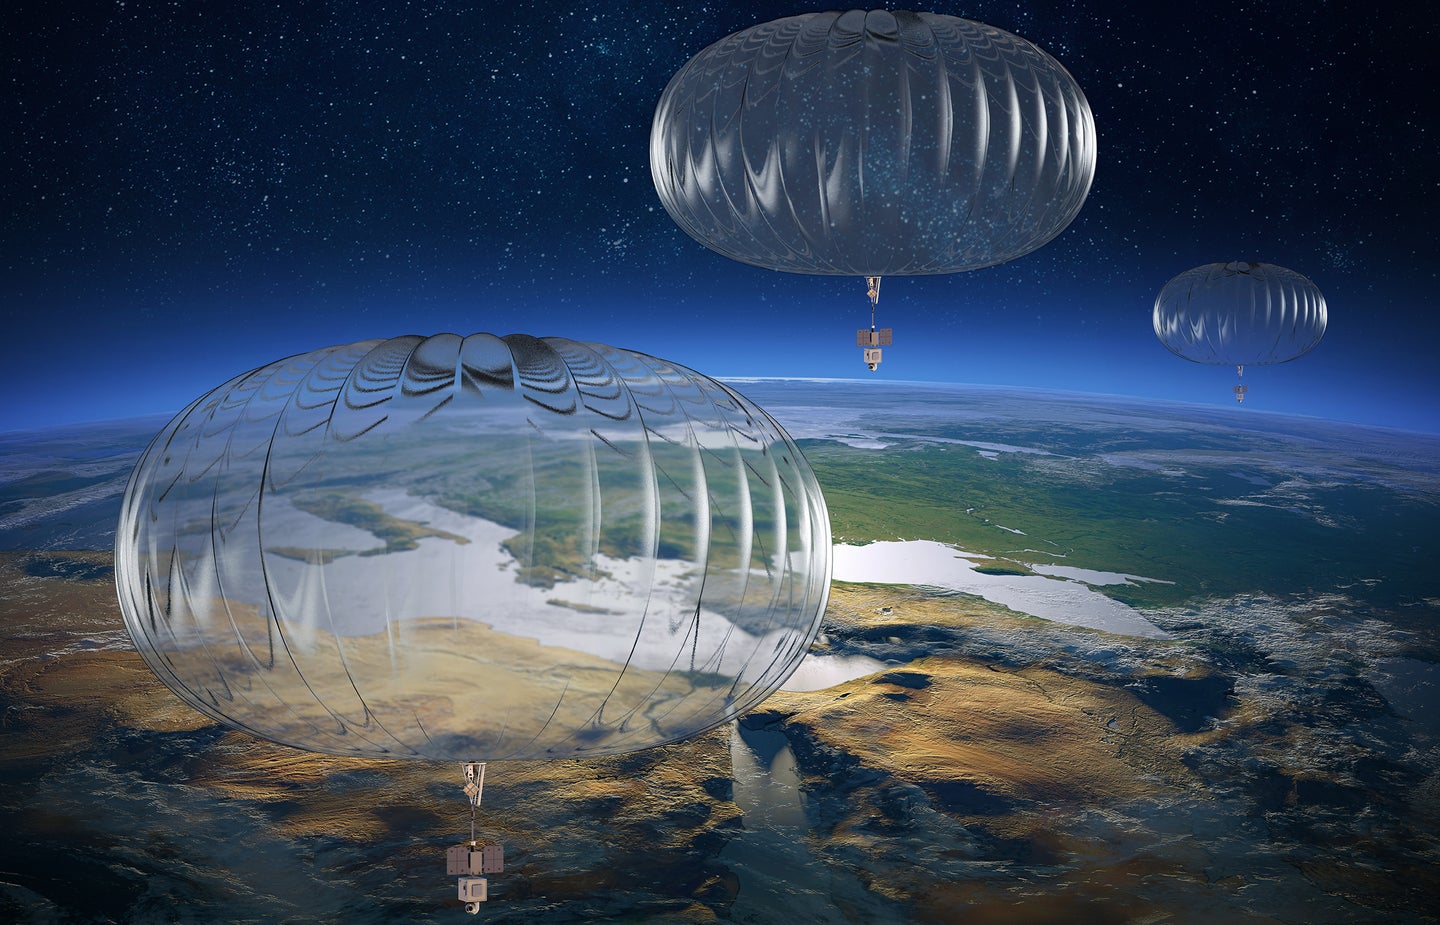 Sierra Nevada's concept high-altitude balloons